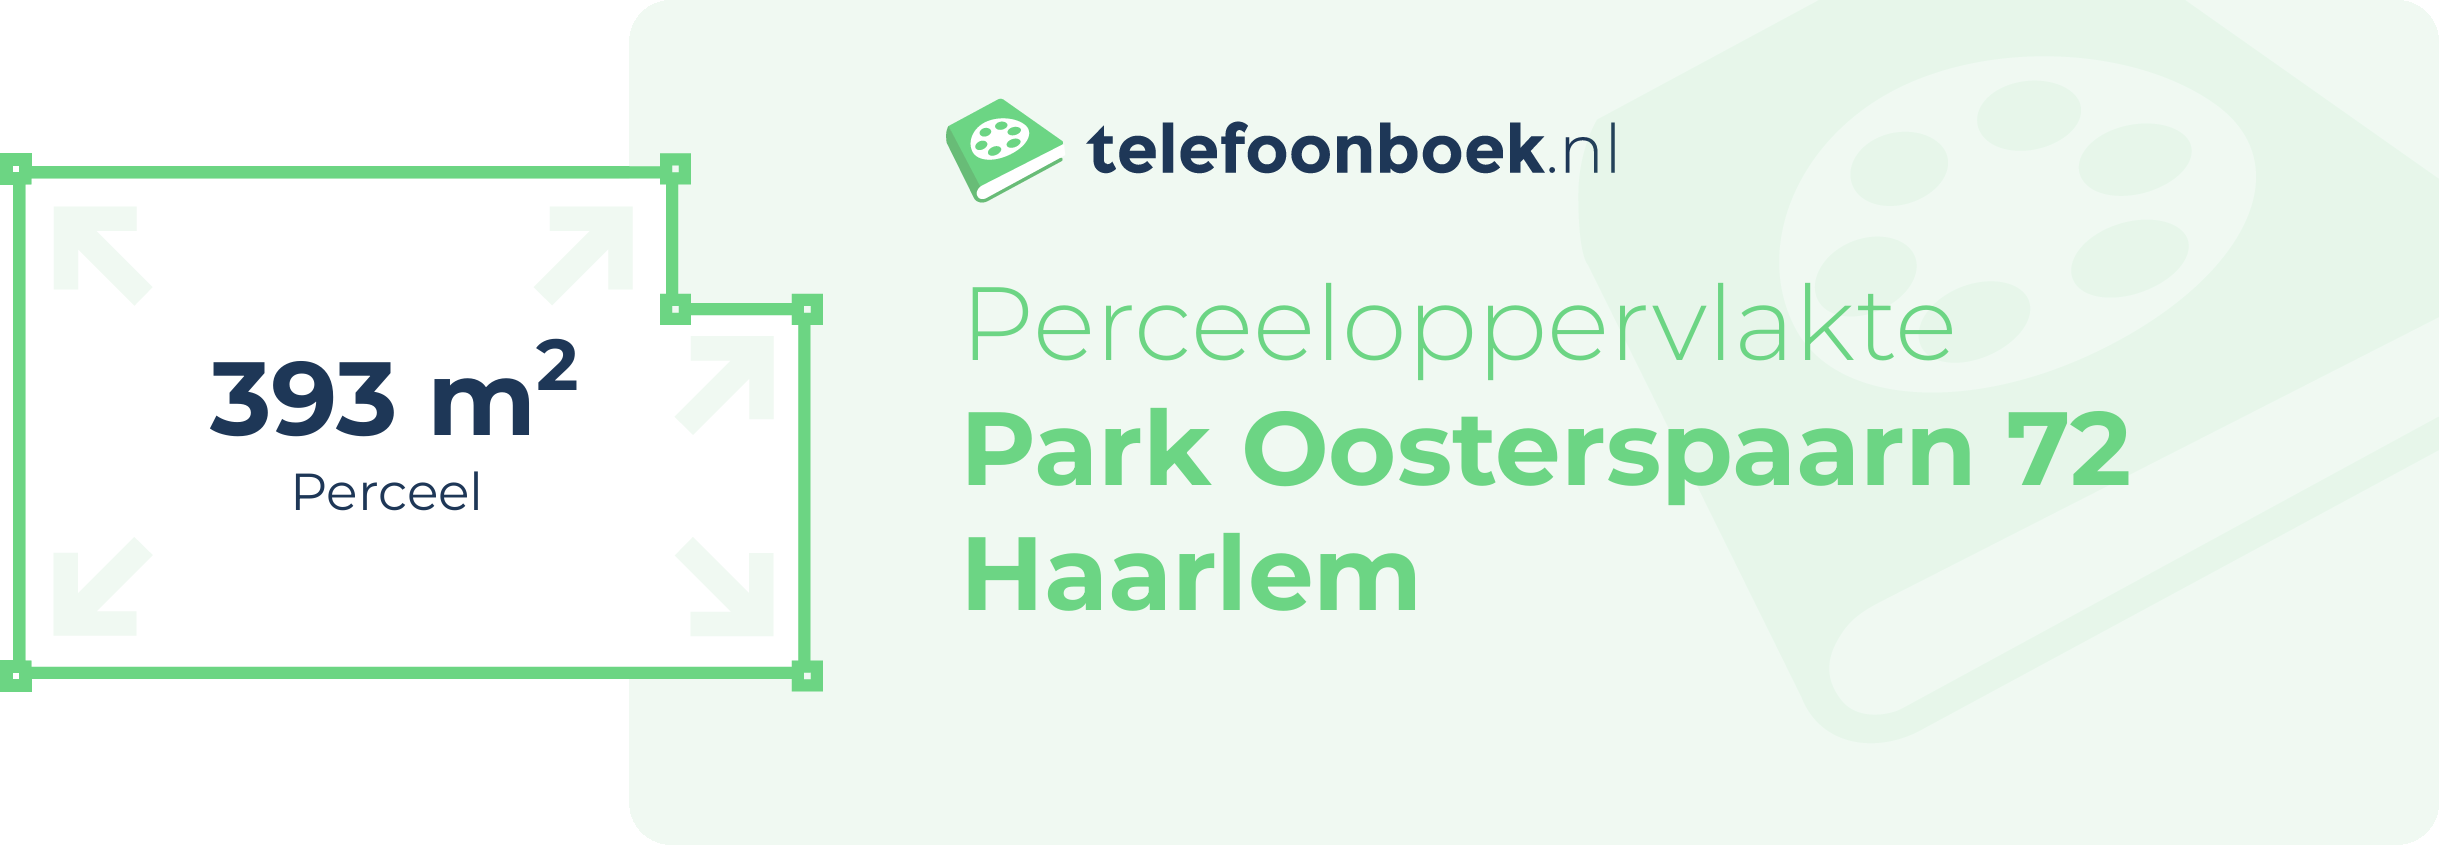 Perceeloppervlakte Park Oosterspaarn 72 Haarlem